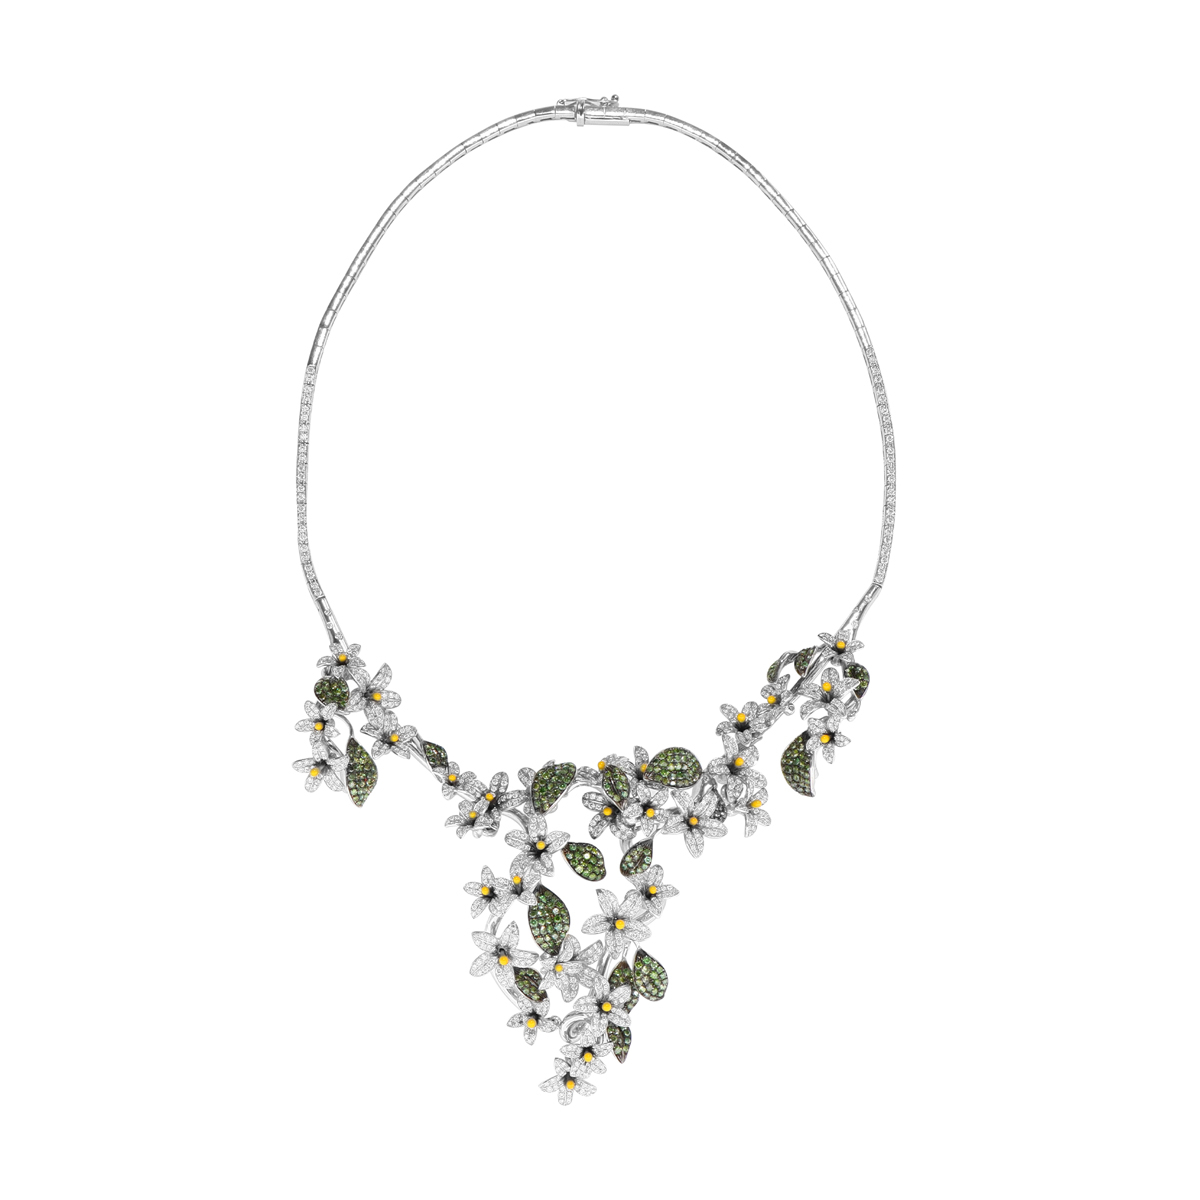 Arabian Star Flower Necklace